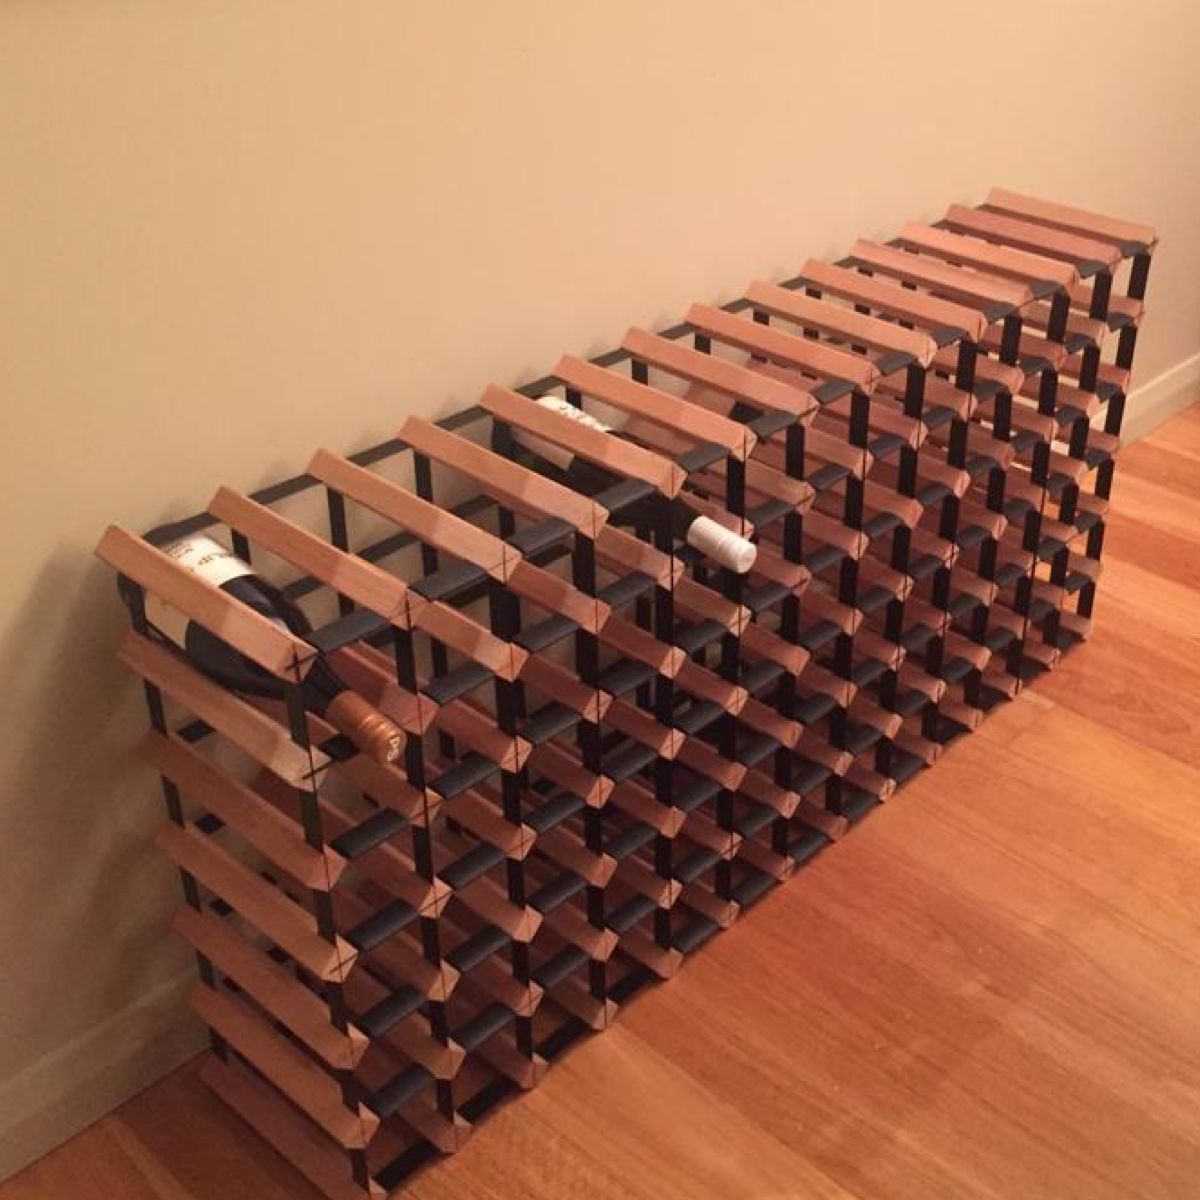 Custom Built Rustic hardwood Wine Rack | Pre-Assembled